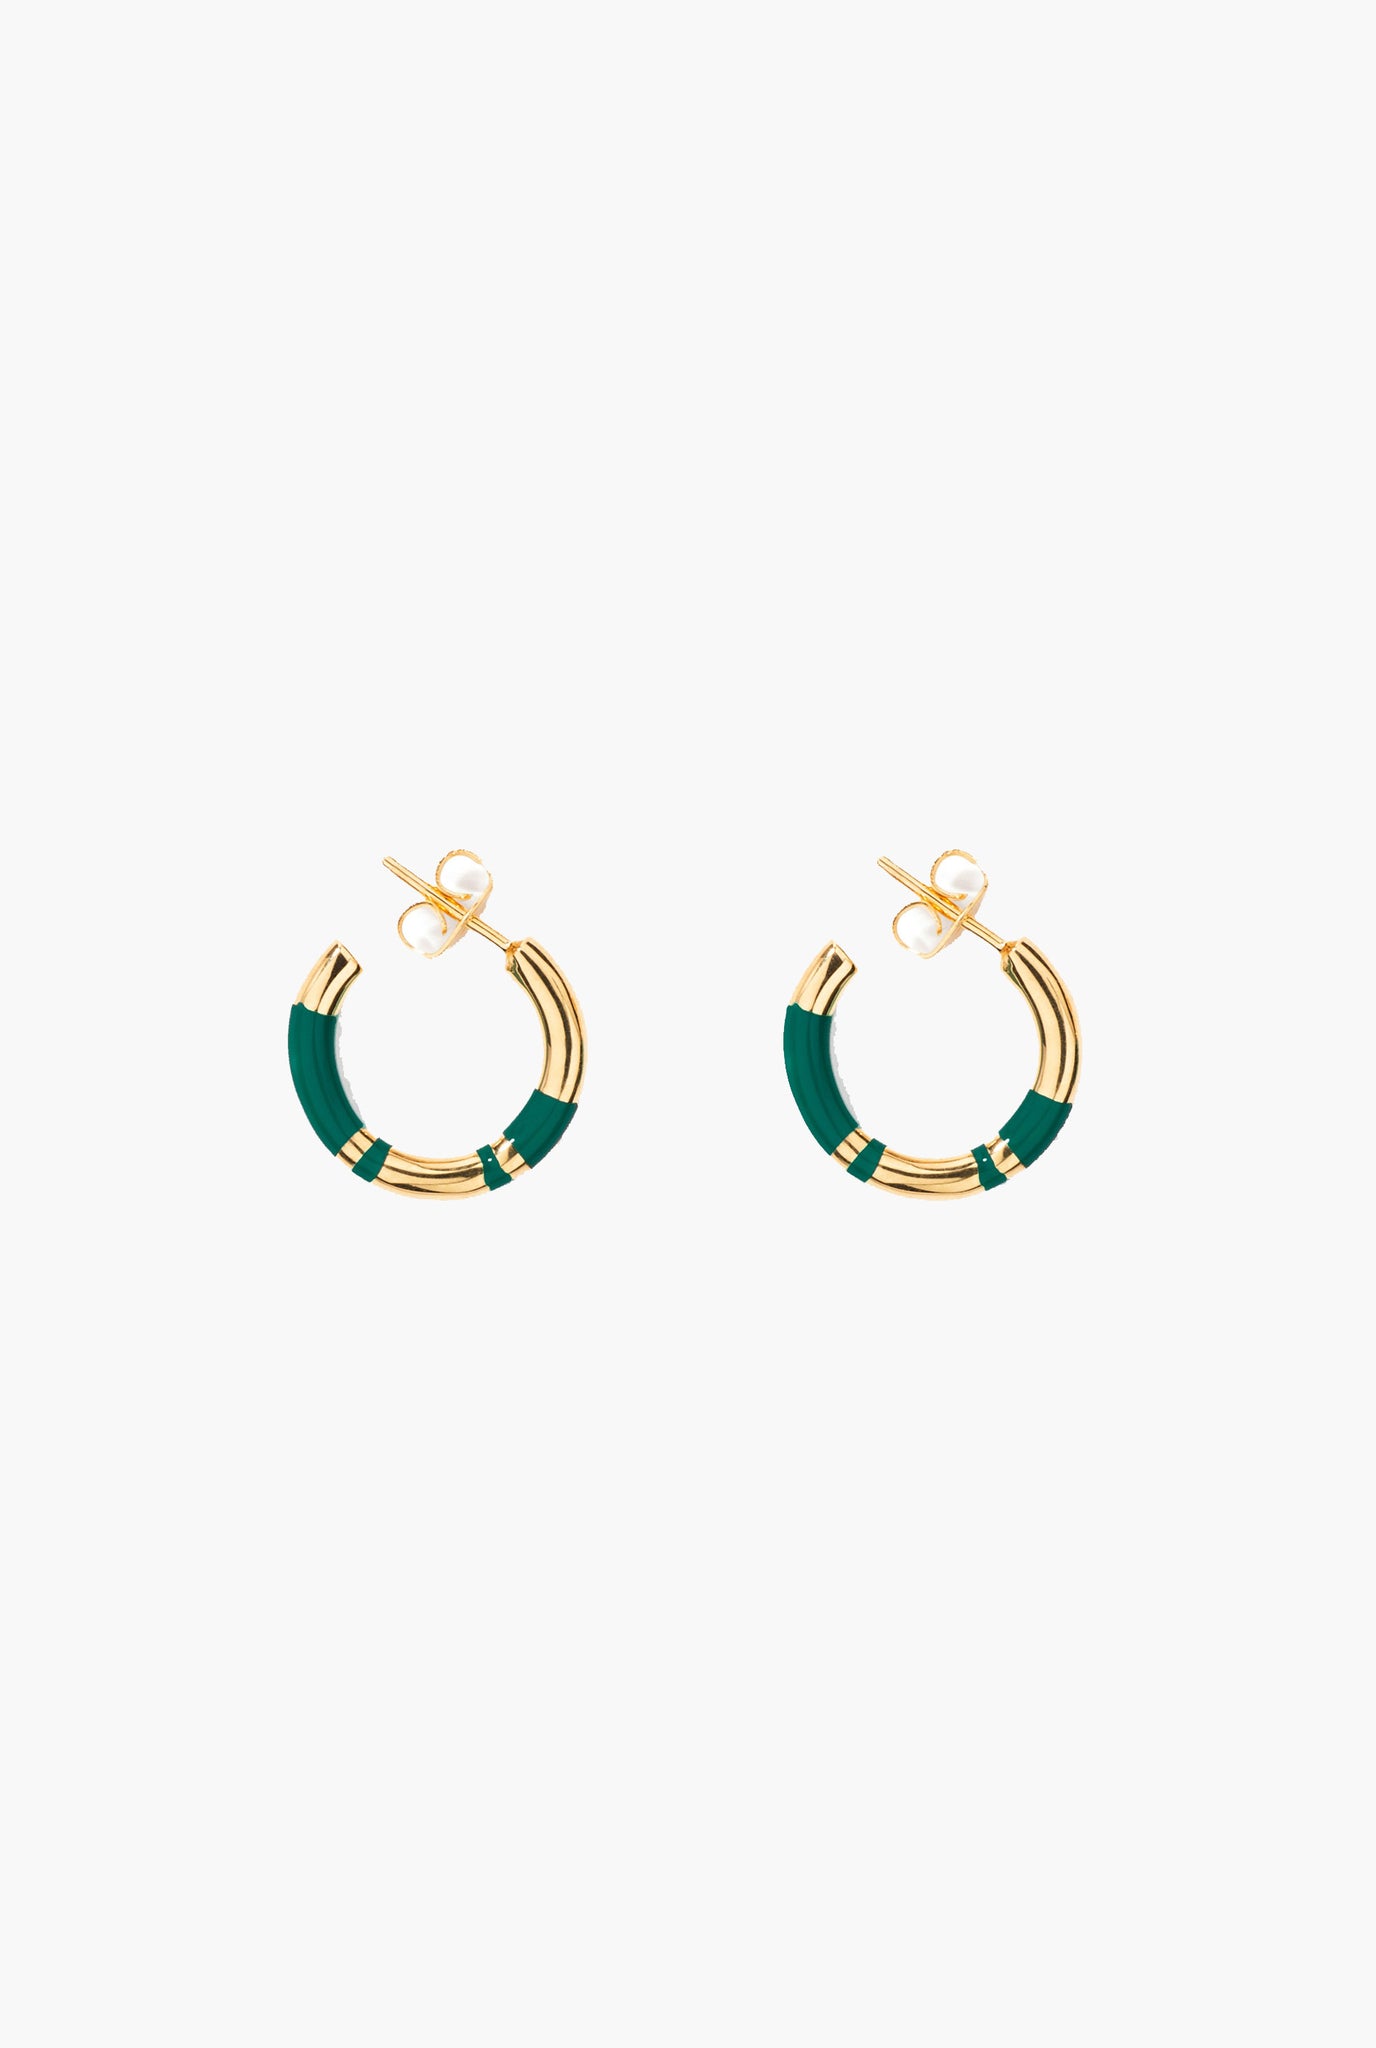 Positano mini hoop earrings, emerald